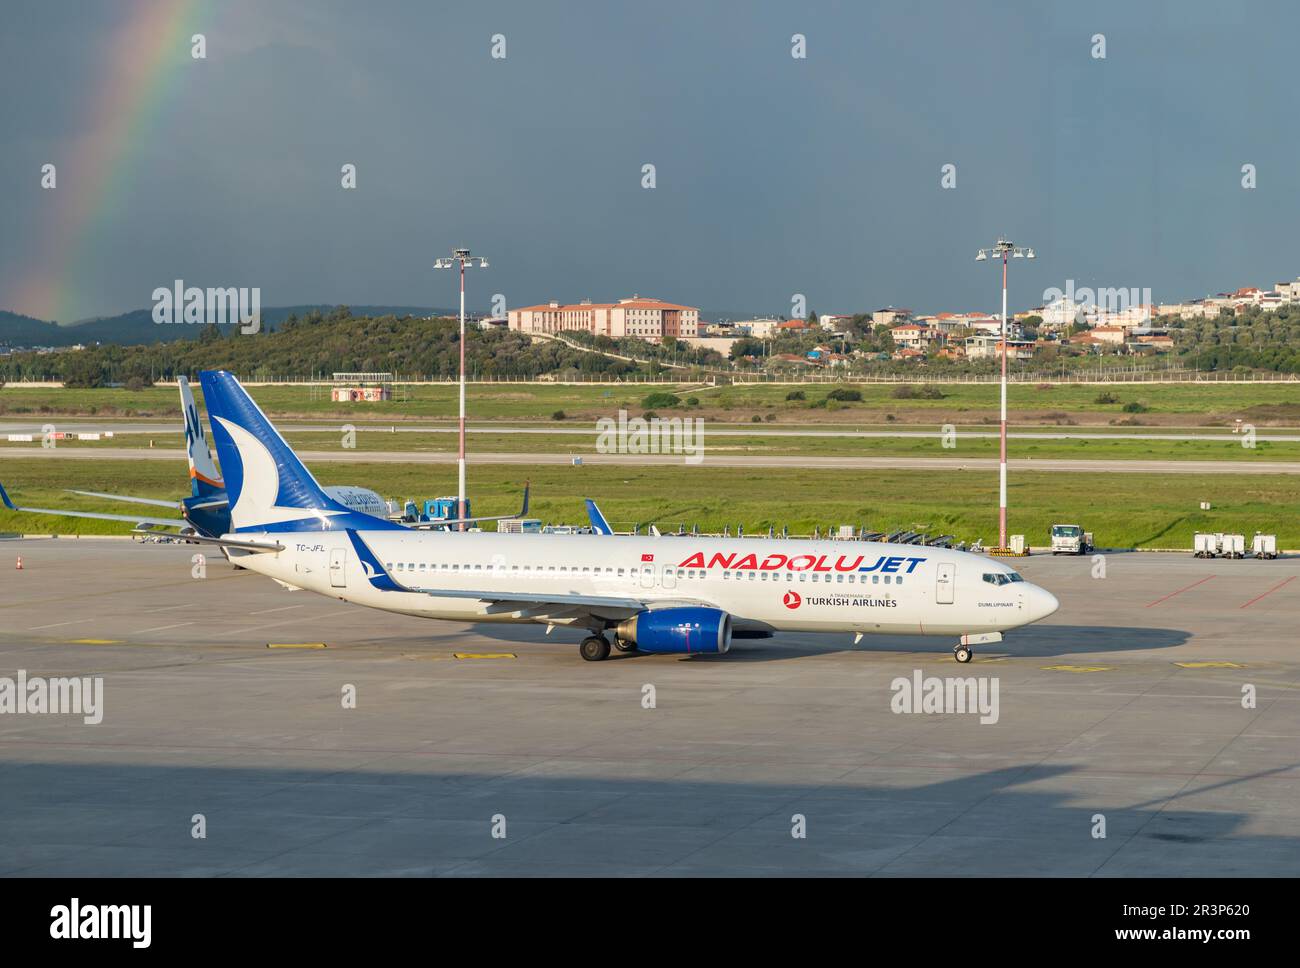 Un'immagine di un aereo AnadoluJet e di un arcobaleno sul lato sinistro. Foto Stock